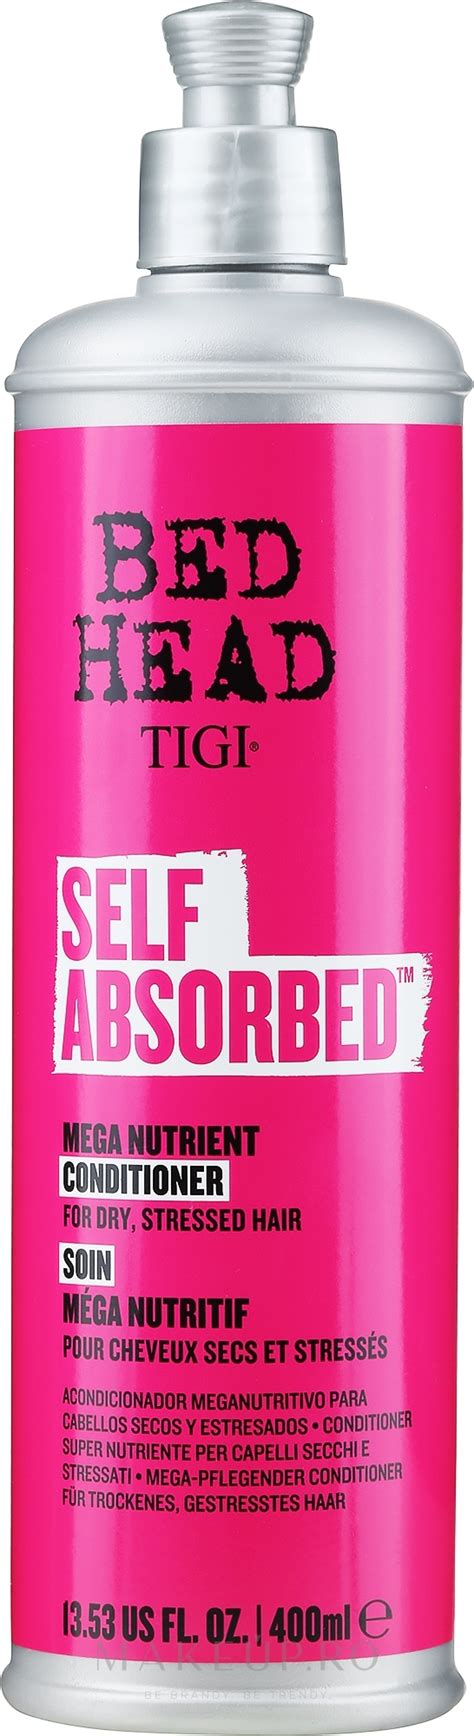 Tigi Bed Head Self Absorbed Mega Vitamin Conditioner Balsam de păr pe